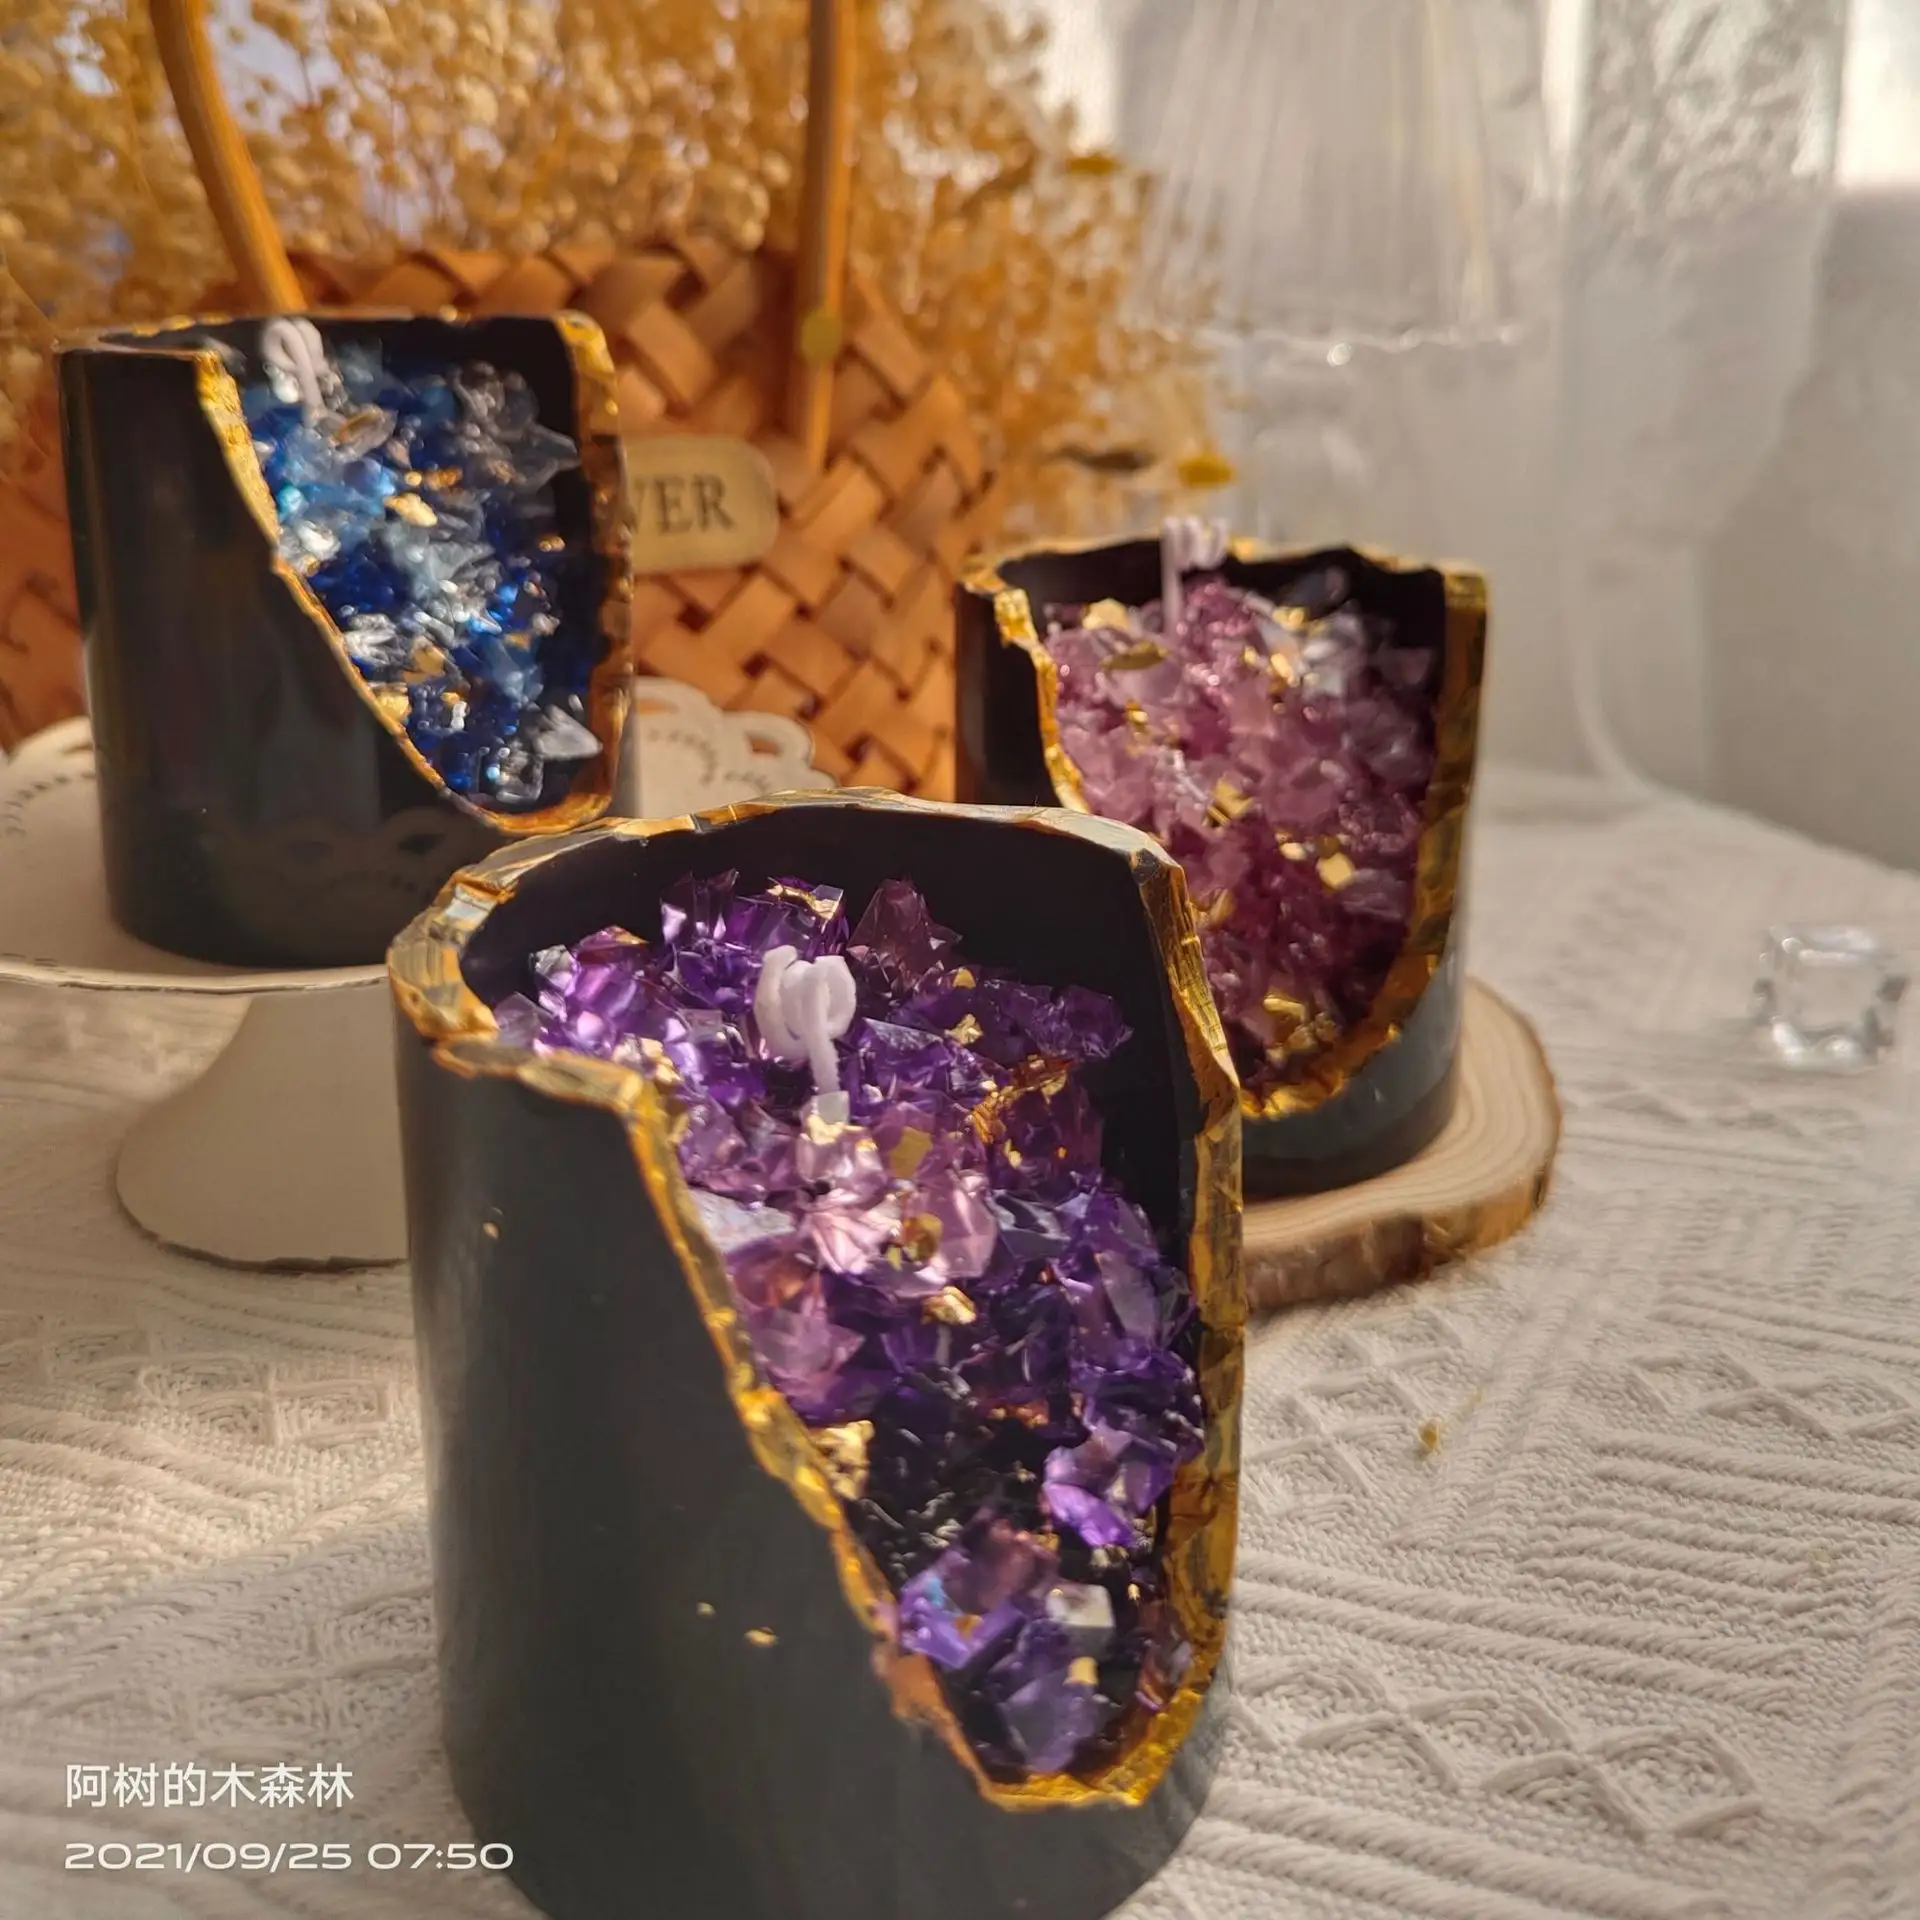 Şifa kristal mumlar altın yaprak kristaller lüks aromaterapi Aroma aromatik ev dekor dekorasyon el yapımı hediye kokulu mum